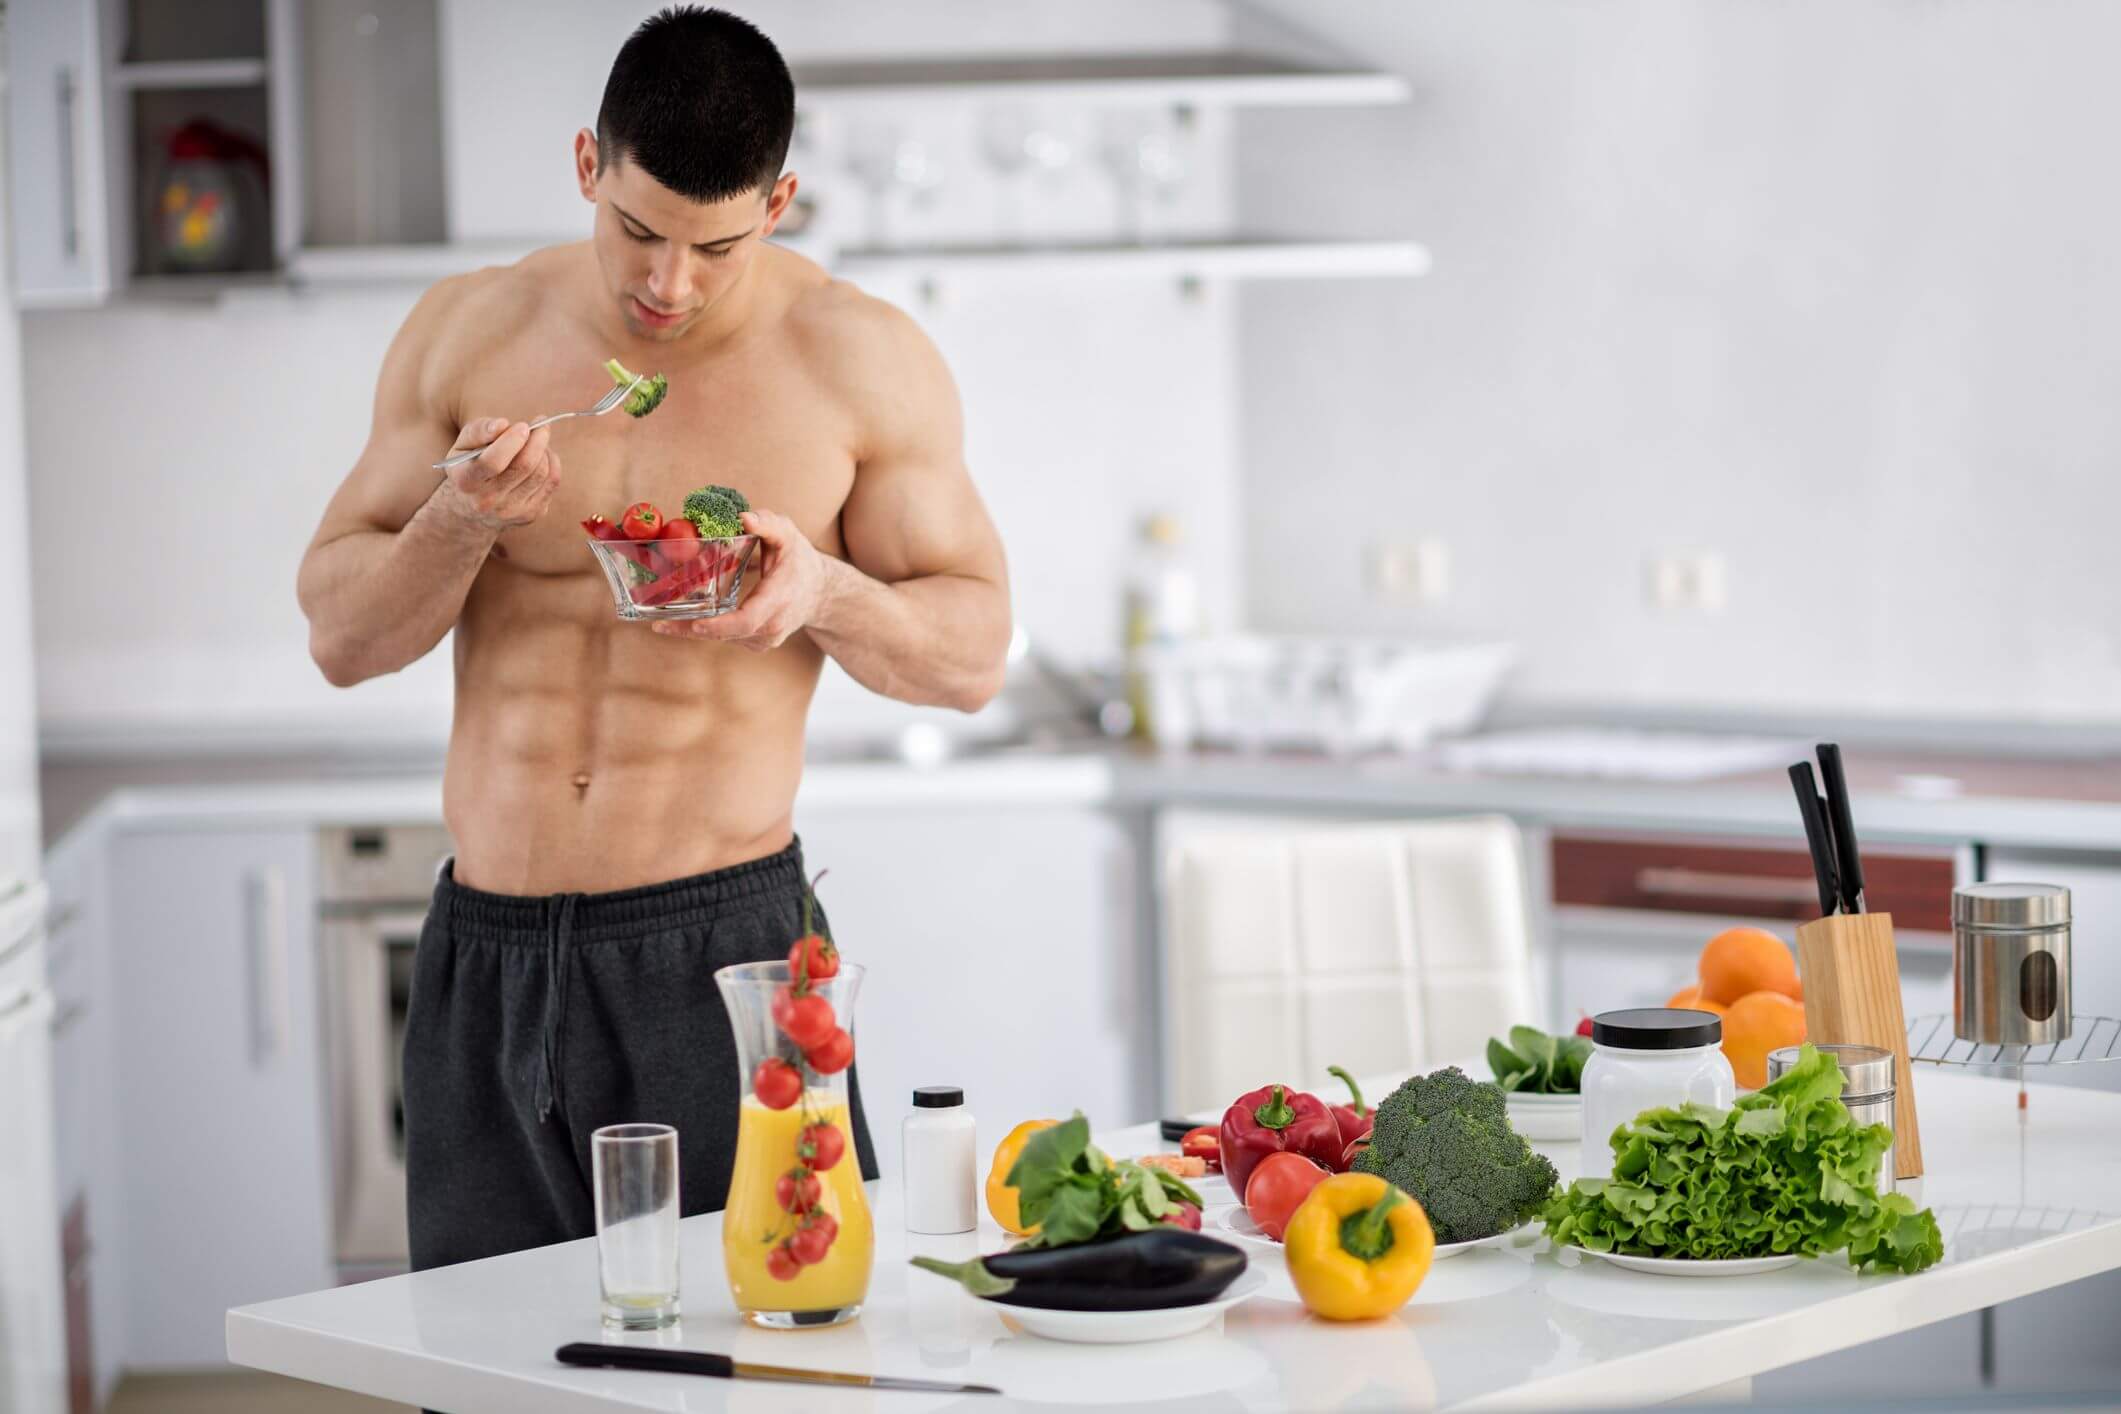 Tham khảo bác sĩ hoặc chuyên gia dinh dưỡng để có chế độ ăn uống phù hợp nhất với bạn, giúp tăng cơ hiệu quả.